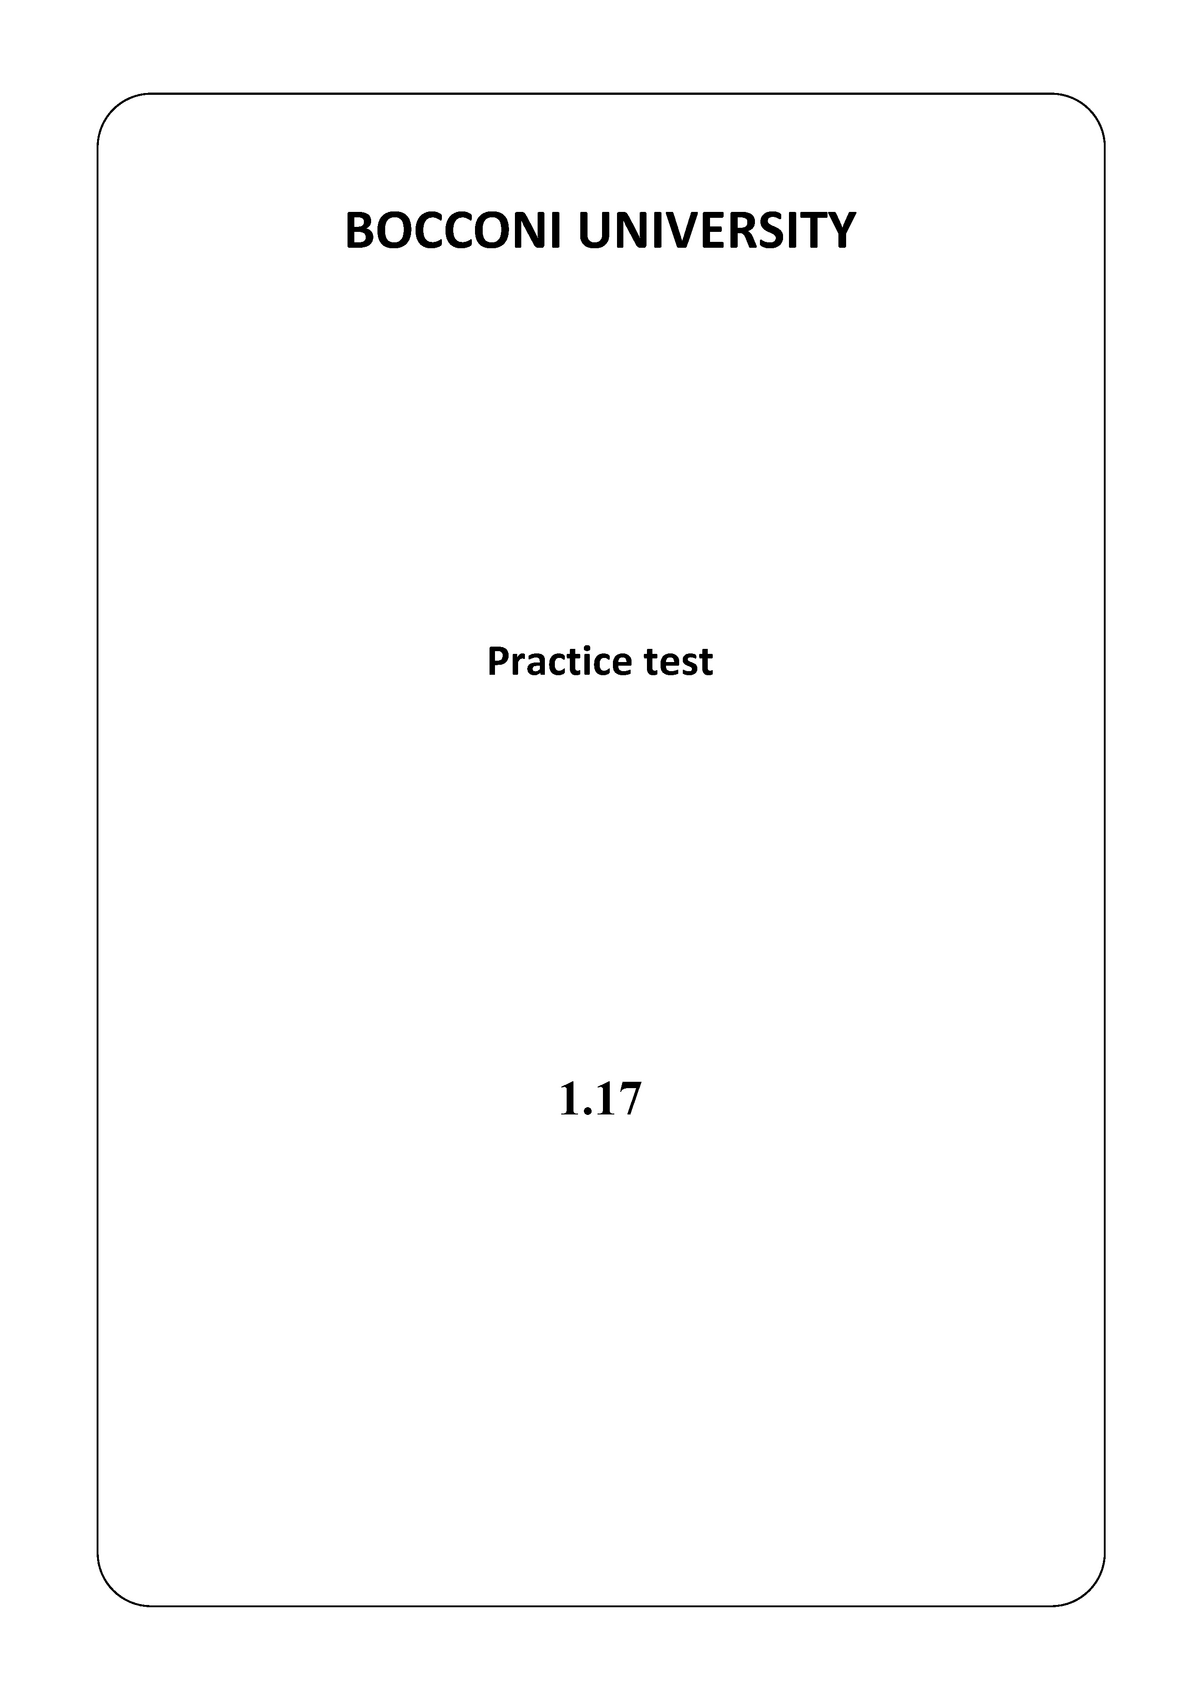 bocconi-test-sample-1-17-en-636555827497881447-bocconi-university-practice-test-1-page-2